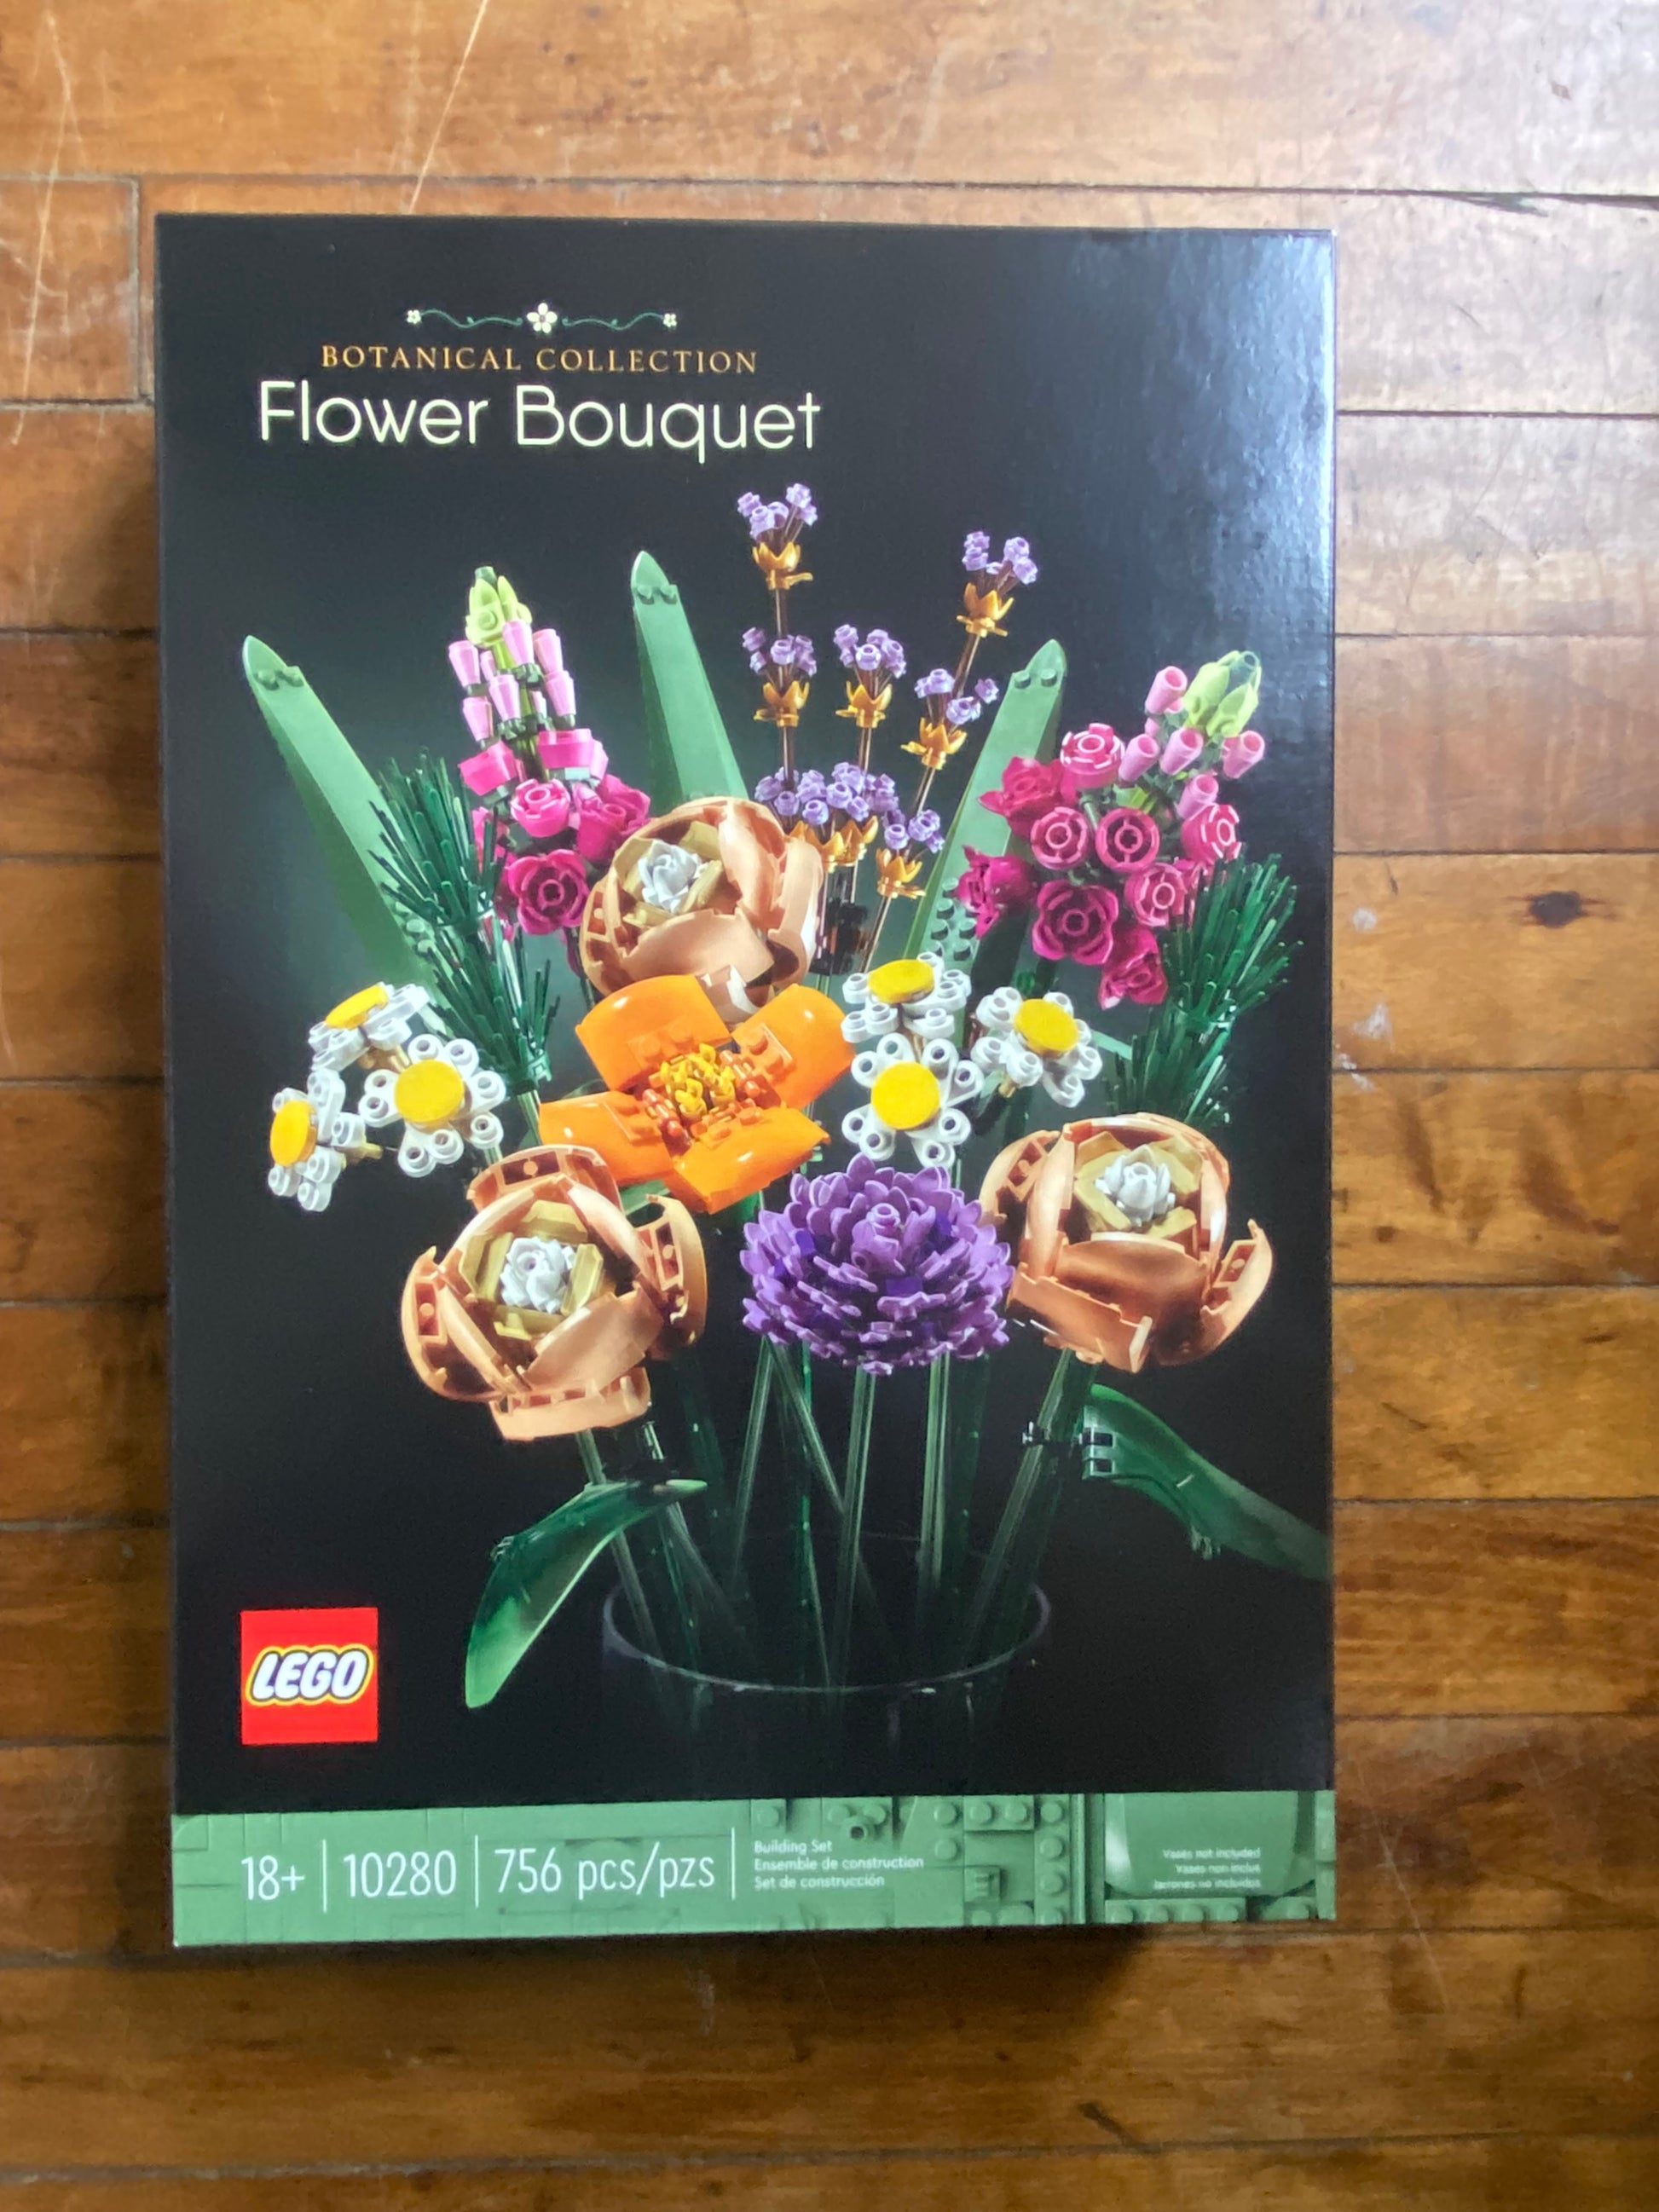 LEGO Creator Botanical Collection Flower Bouquet – dAN's Parents' House